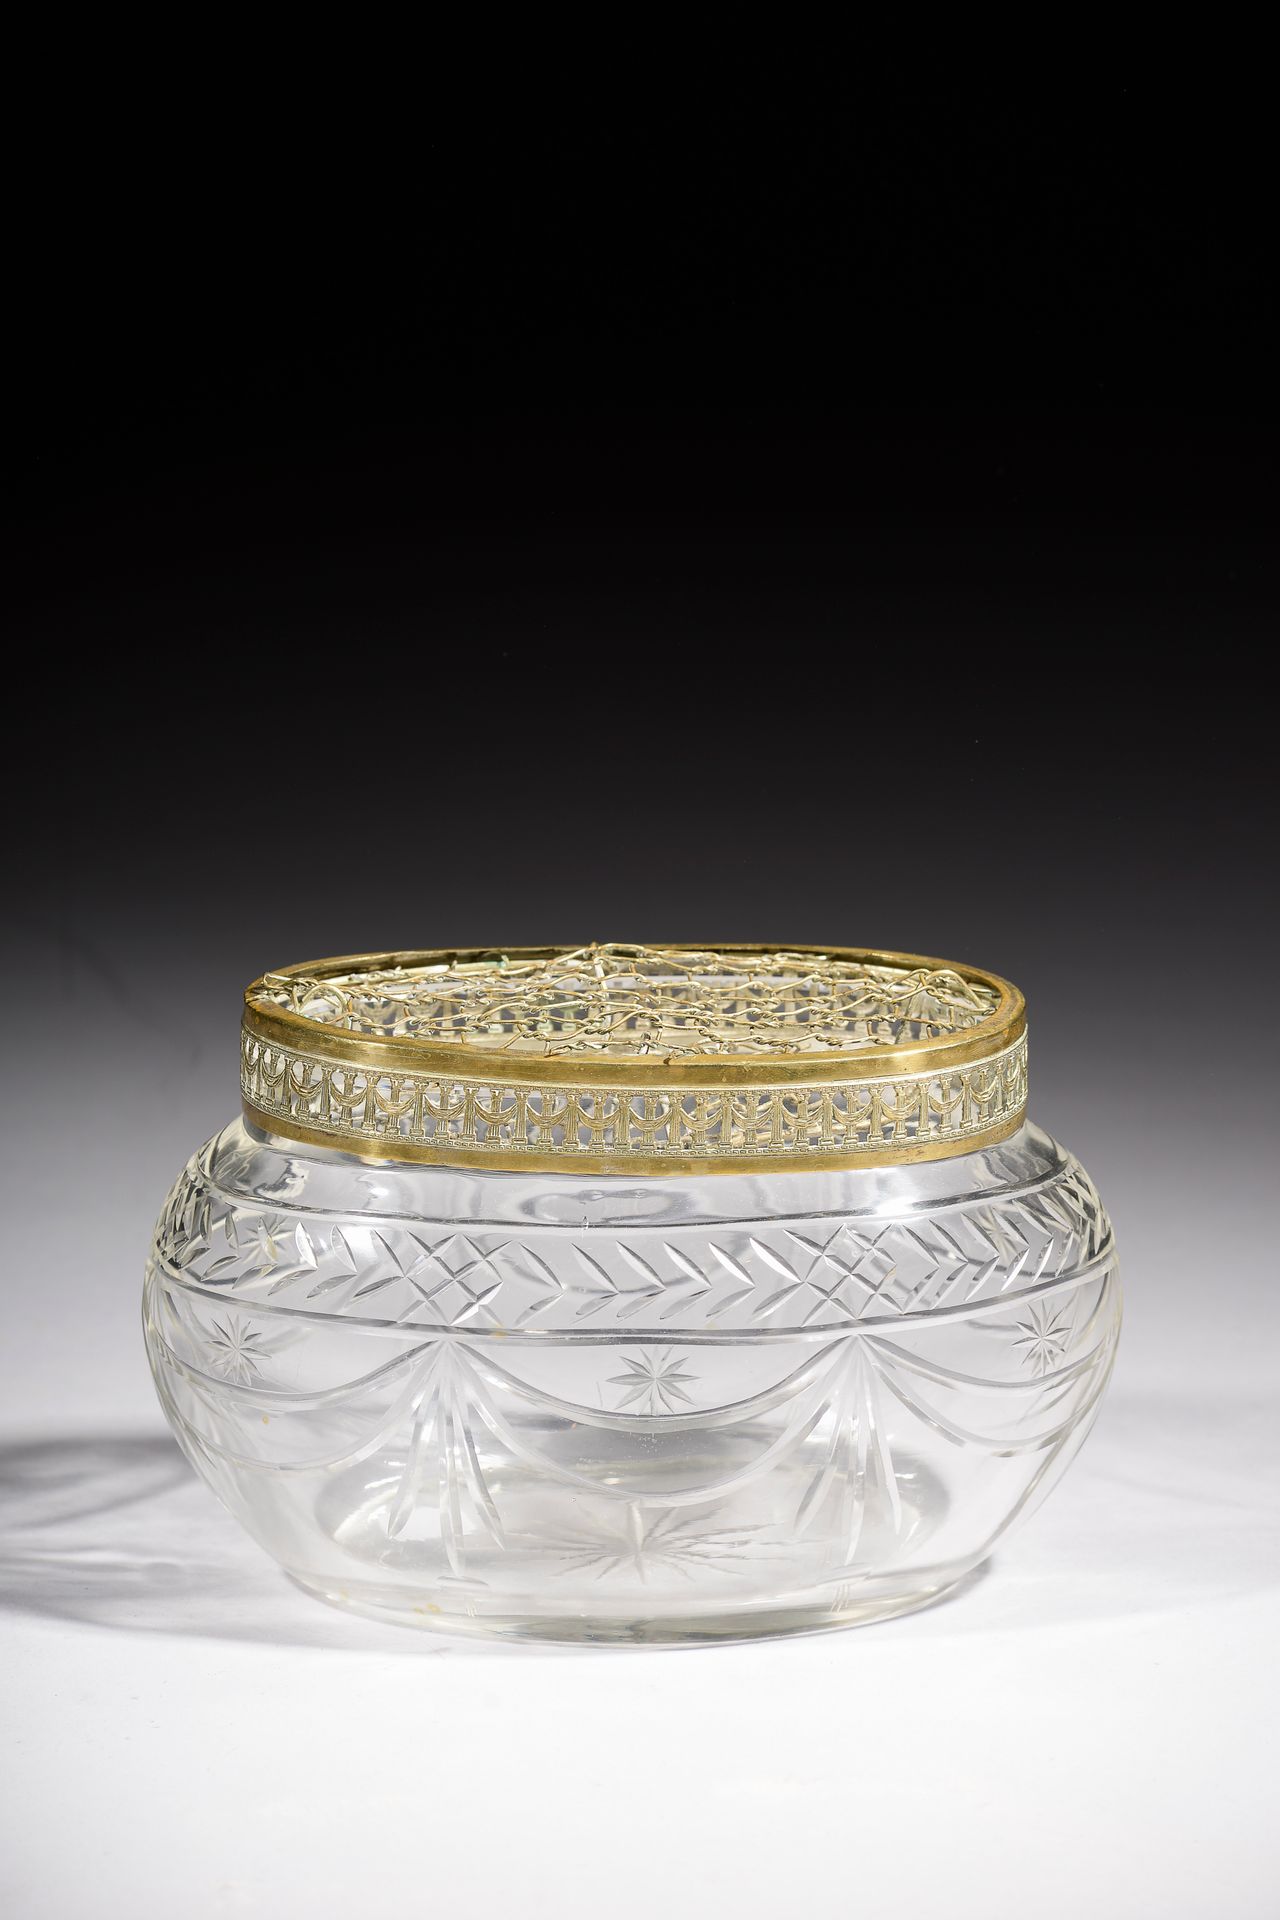 Null 一个椭圆形的切花水晶花瓶，镀金的金属框架上有垂下的柱子装饰（镀金的地方有磨损）。

19世纪晚期。

长度：23厘米